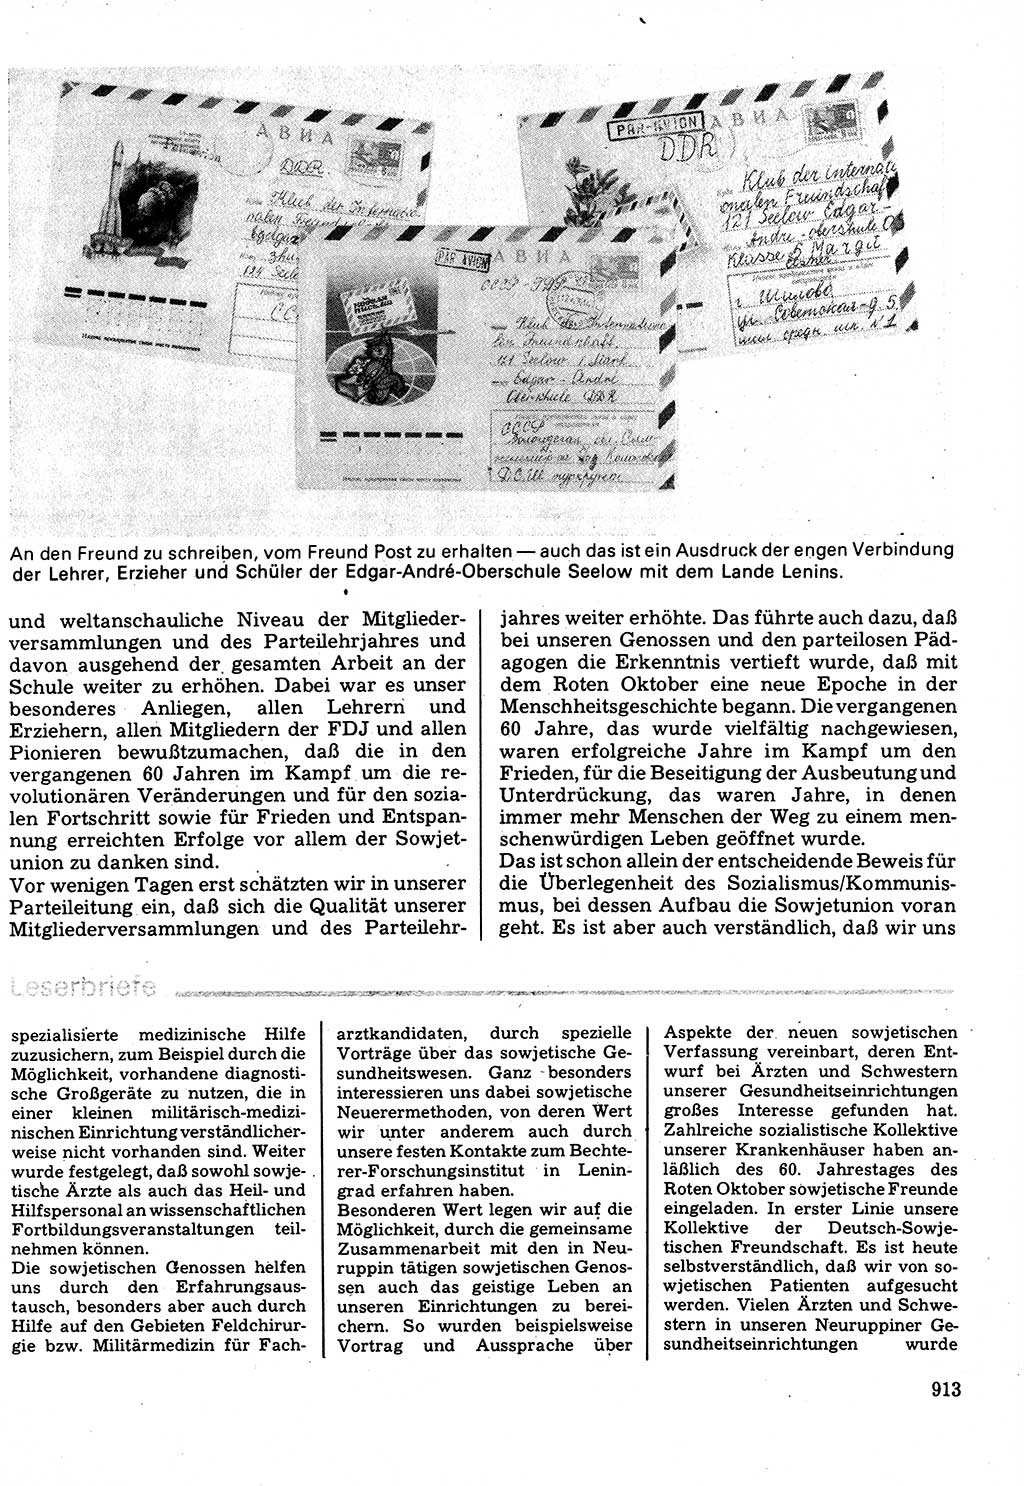 Neuer Weg (NW), Organ des Zentralkomitees (ZK) der SED (Sozialistische Einheitspartei Deutschlands) für Fragen des Parteilebens, 32. Jahrgang [Deutsche Demokratische Republik (DDR)] 1977, Seite 913 (NW ZK SED DDR 1977, S. 913)